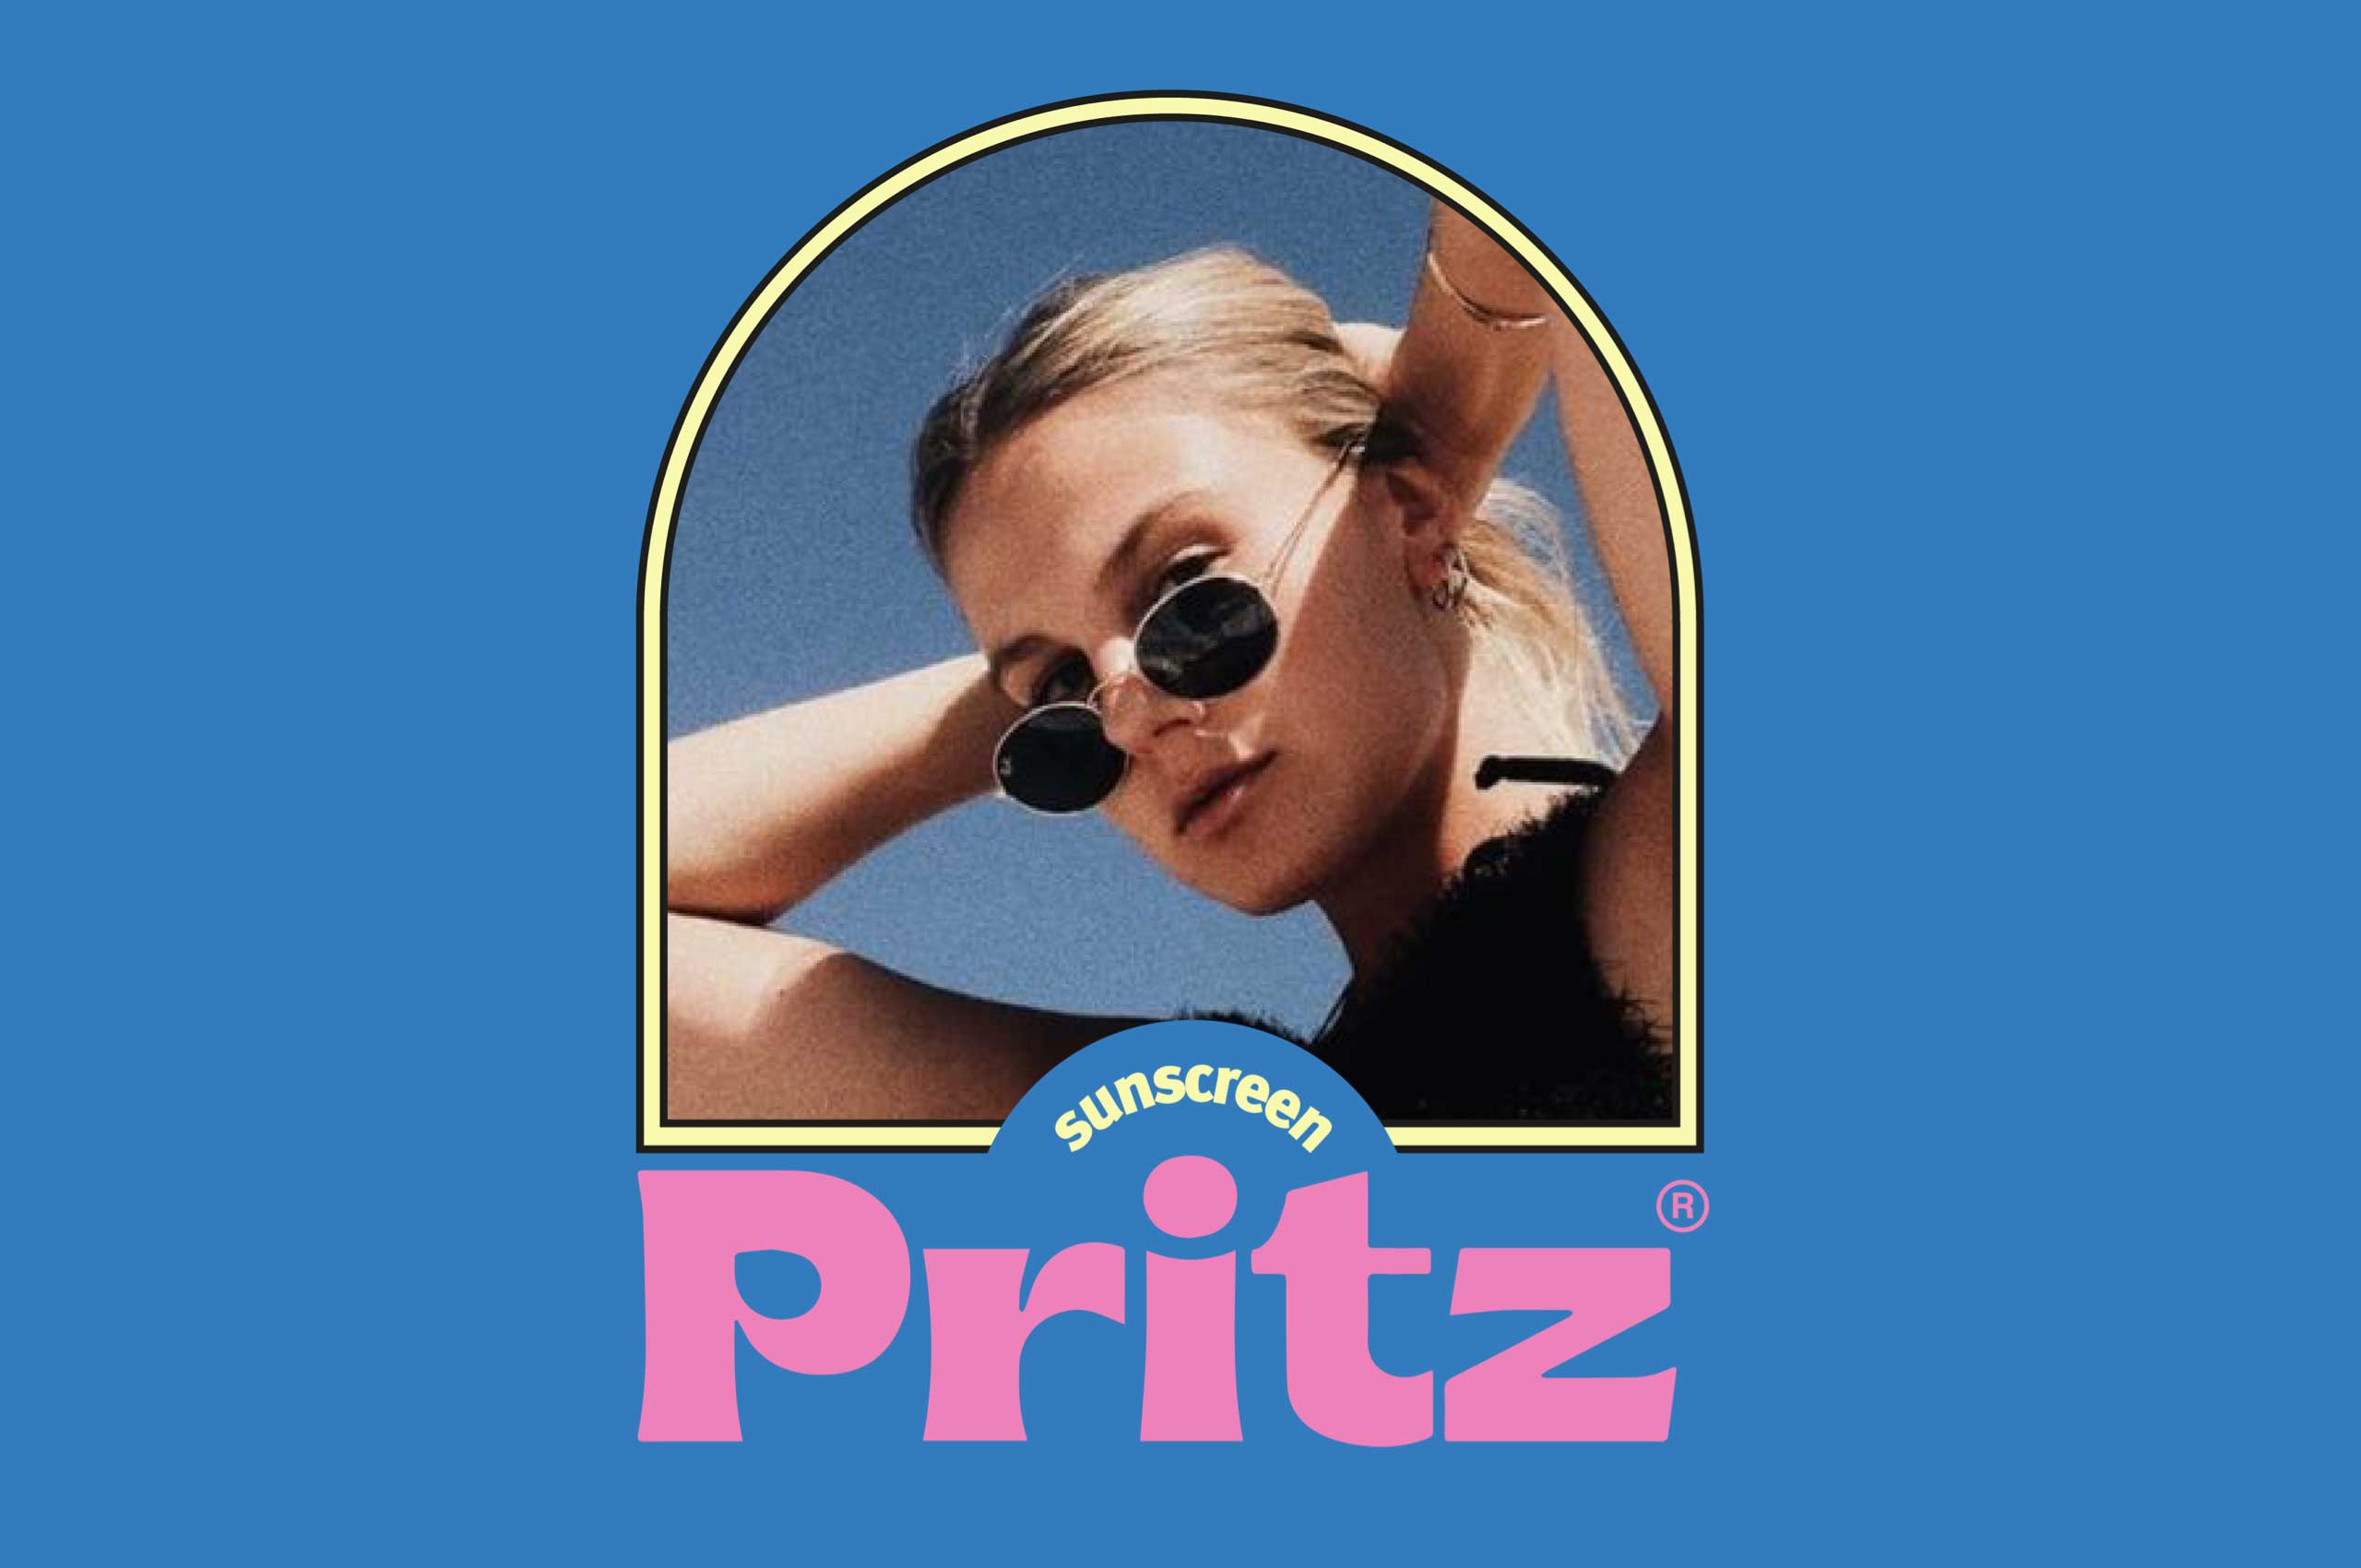 Pritz_02